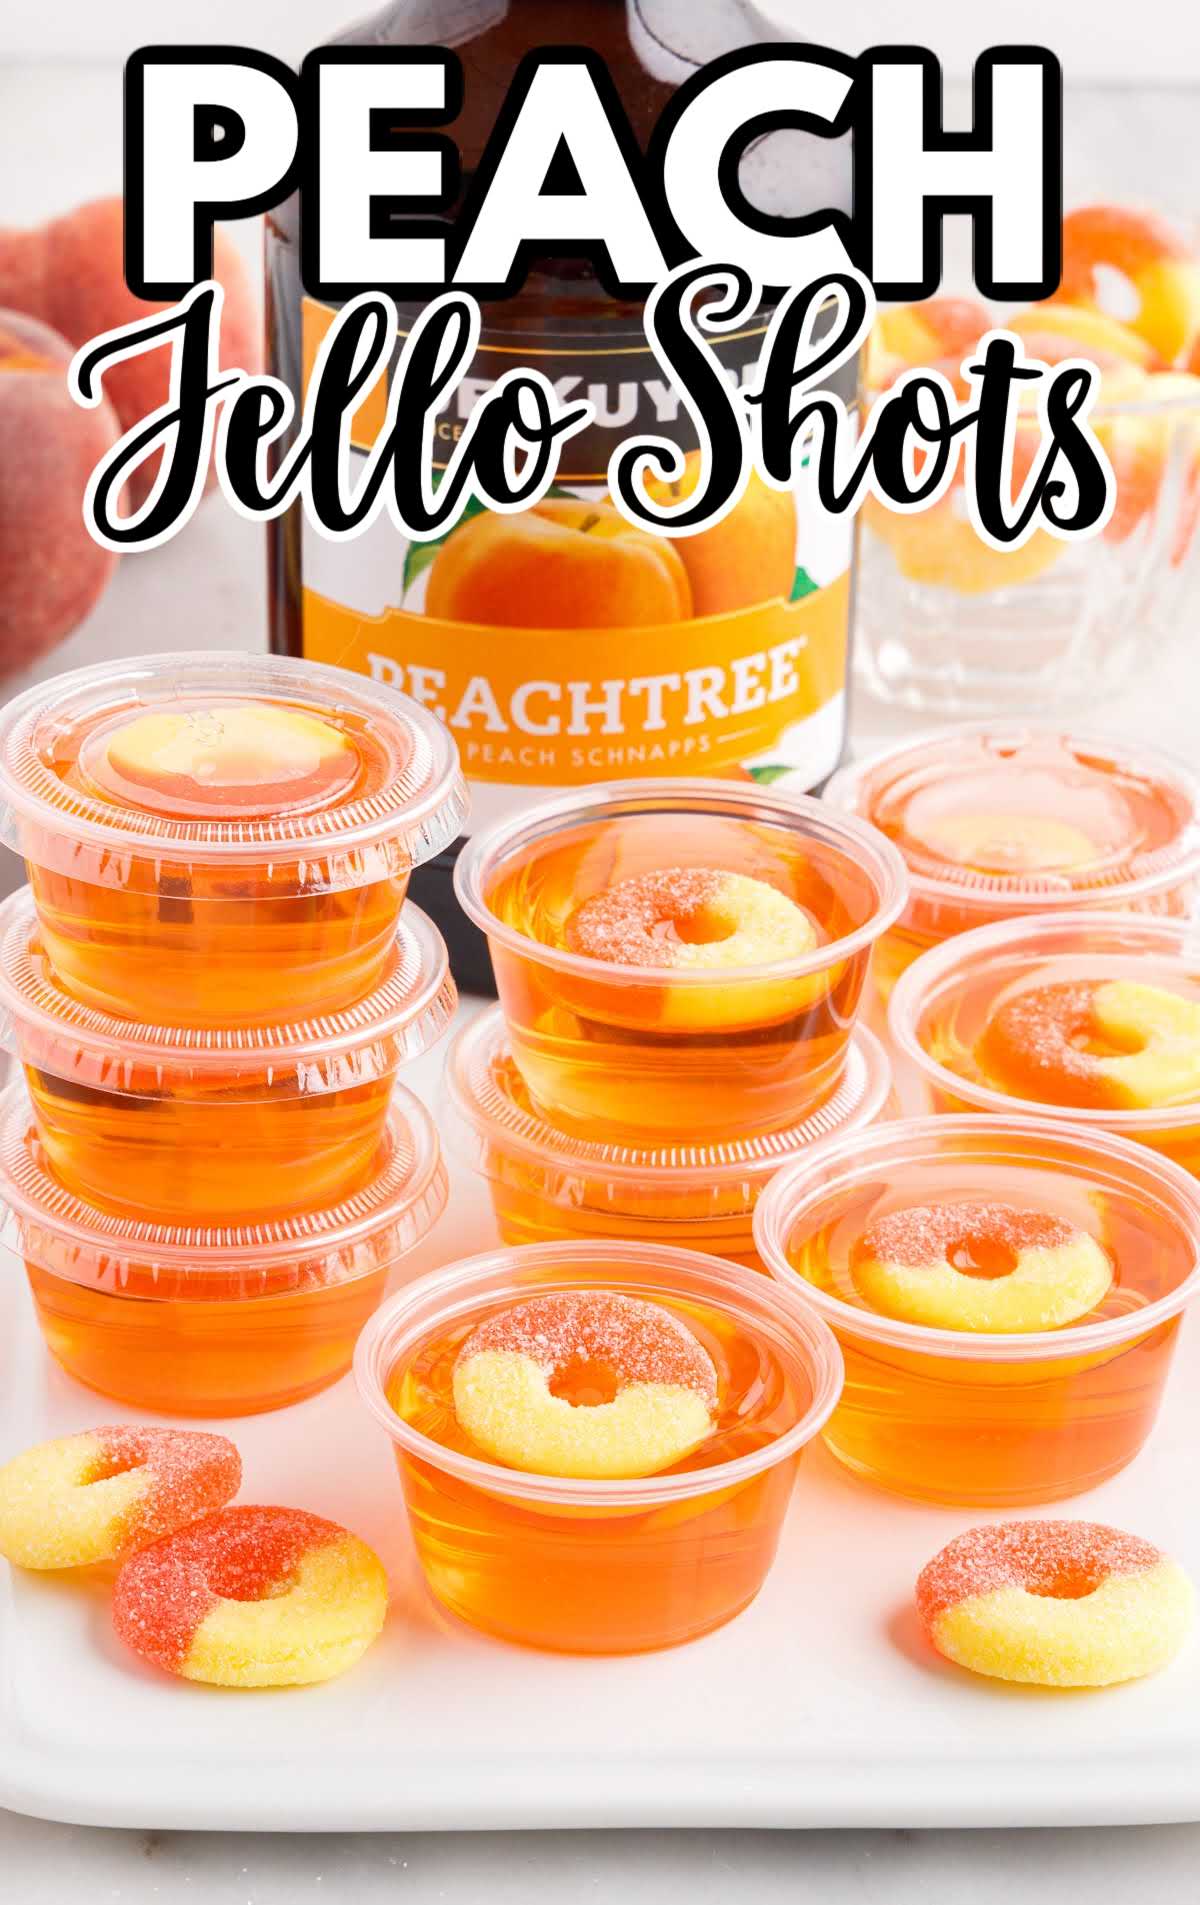 Peach and Jello shot